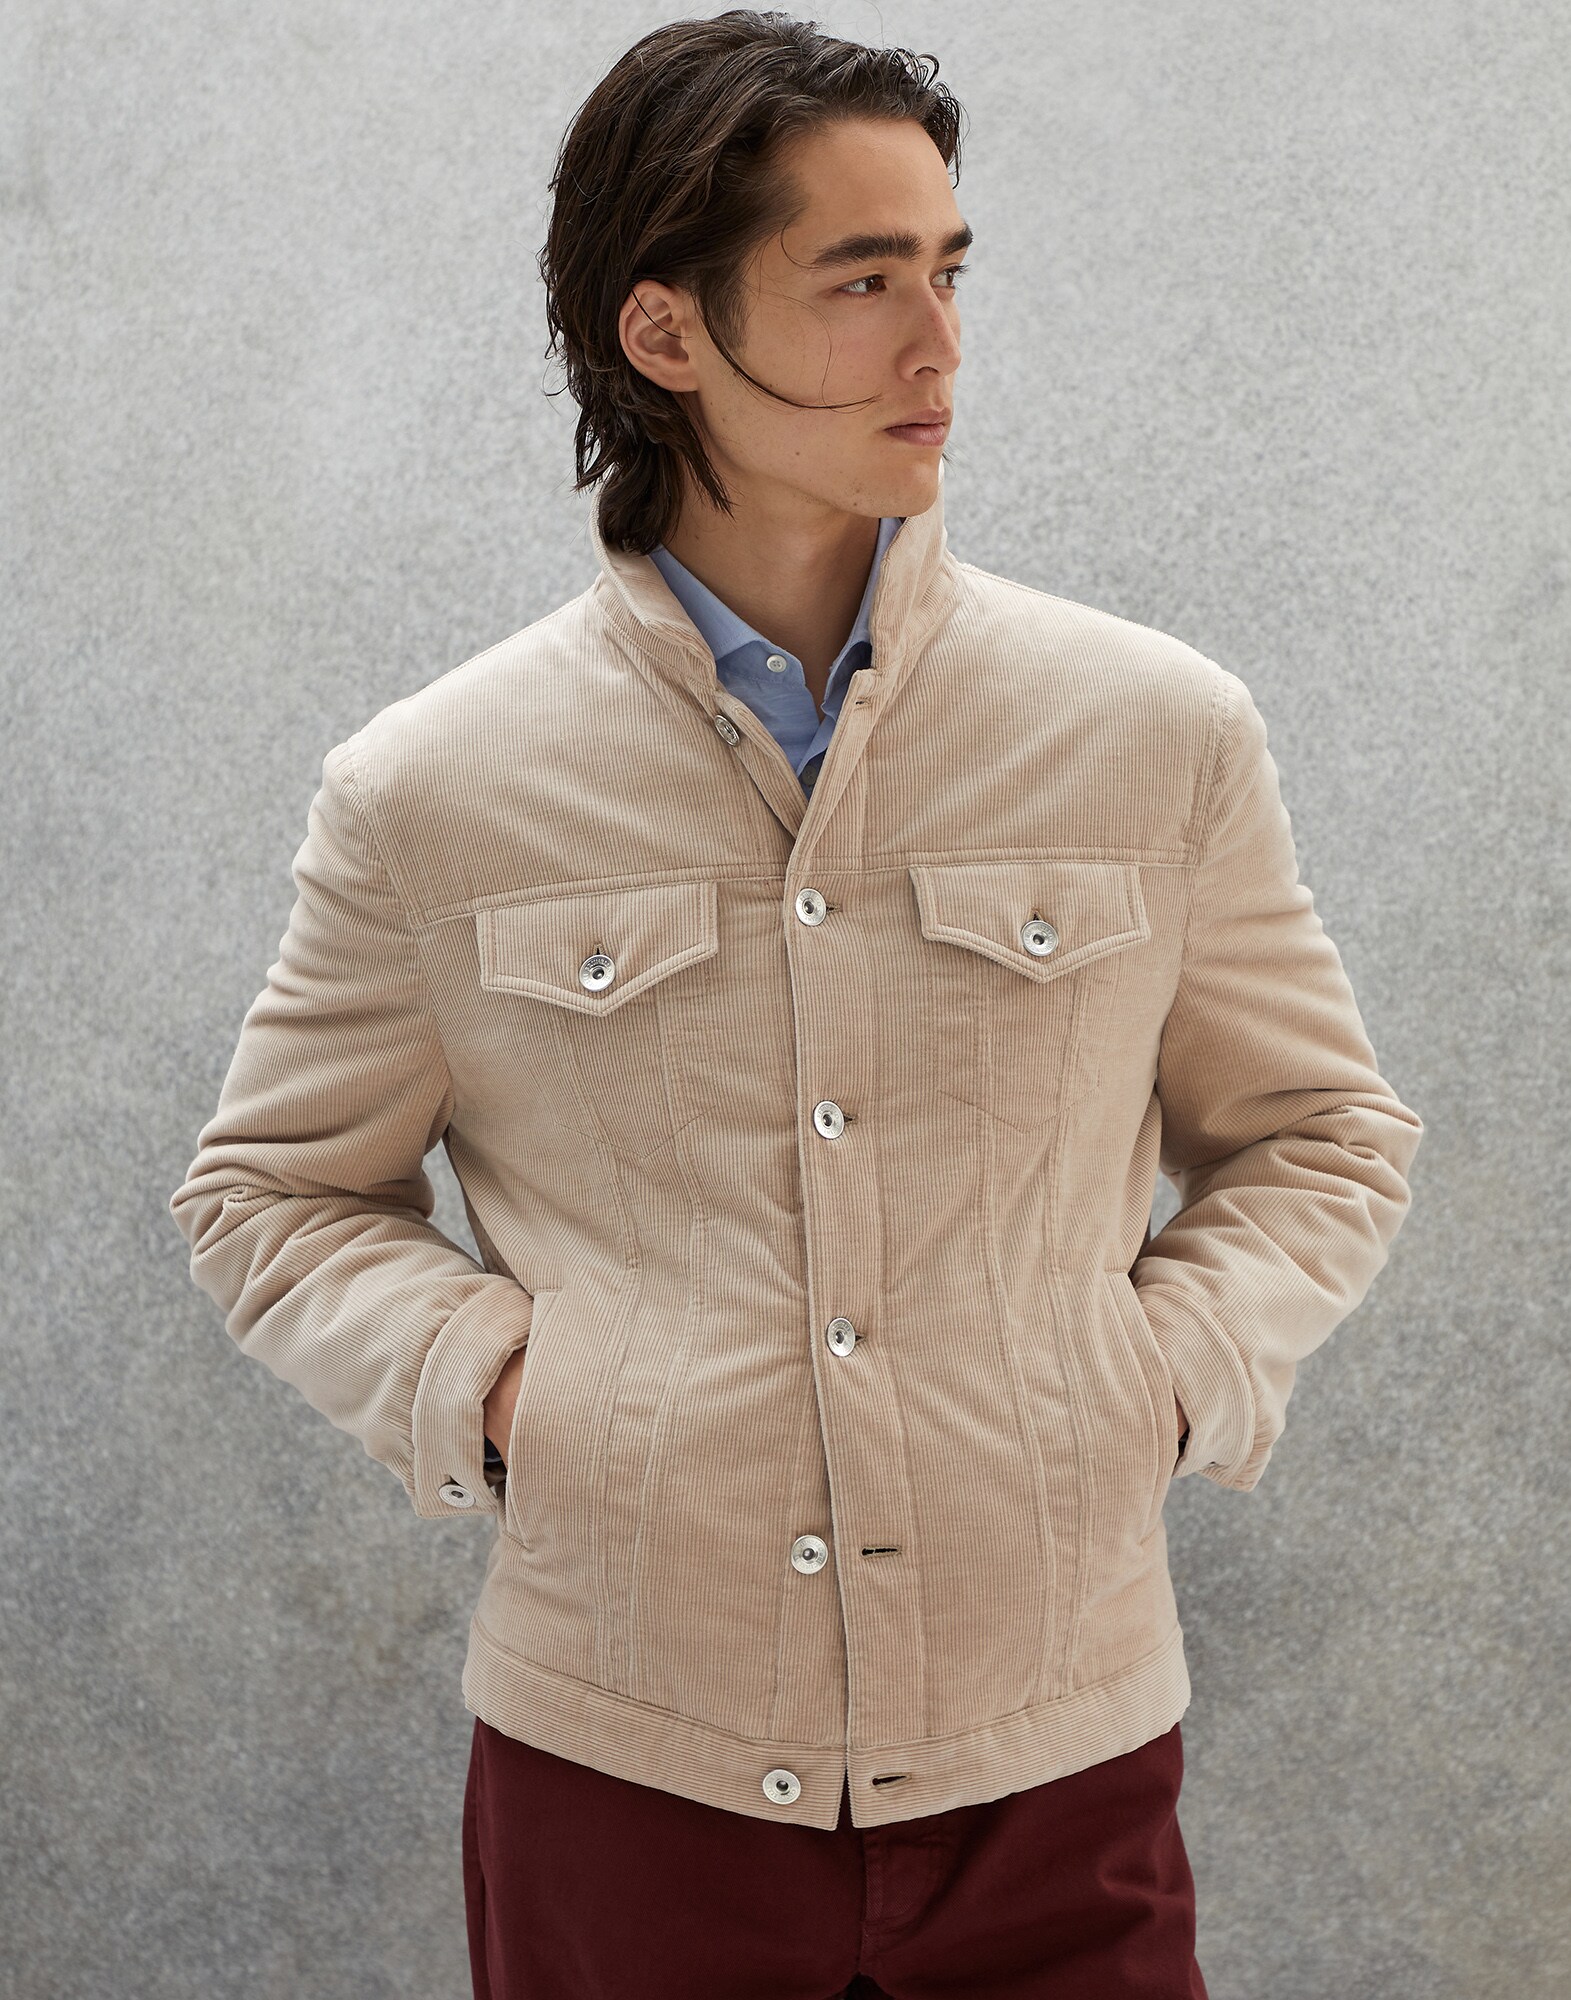 Four-pocket jacket with padding